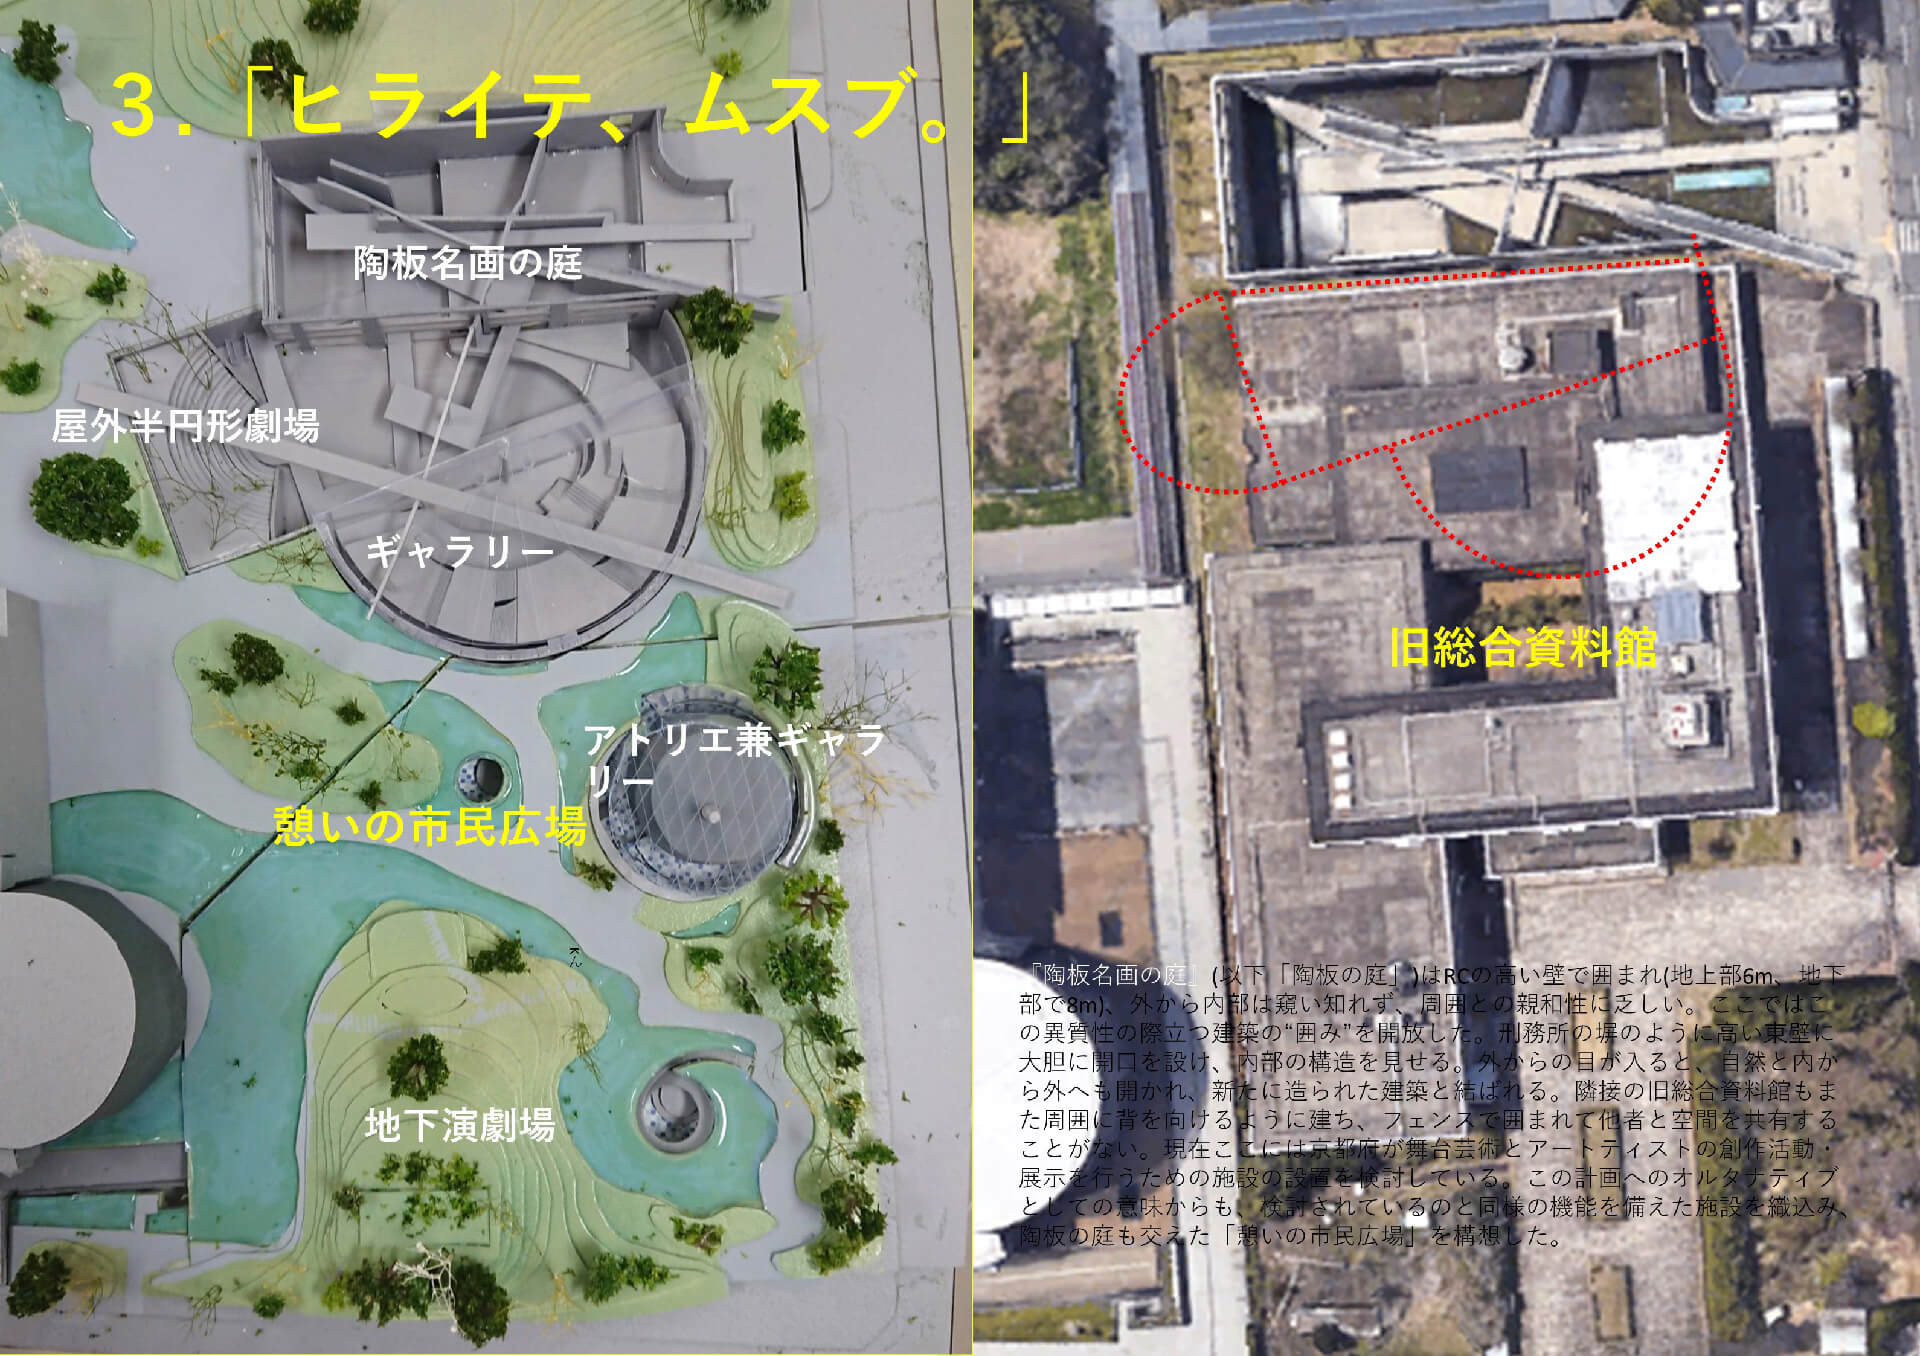 「カコム、ツナガル。ヒライテ、ムスブ。」-京都府・北⼭⽂化エリアにおける既存建築群の融合--5